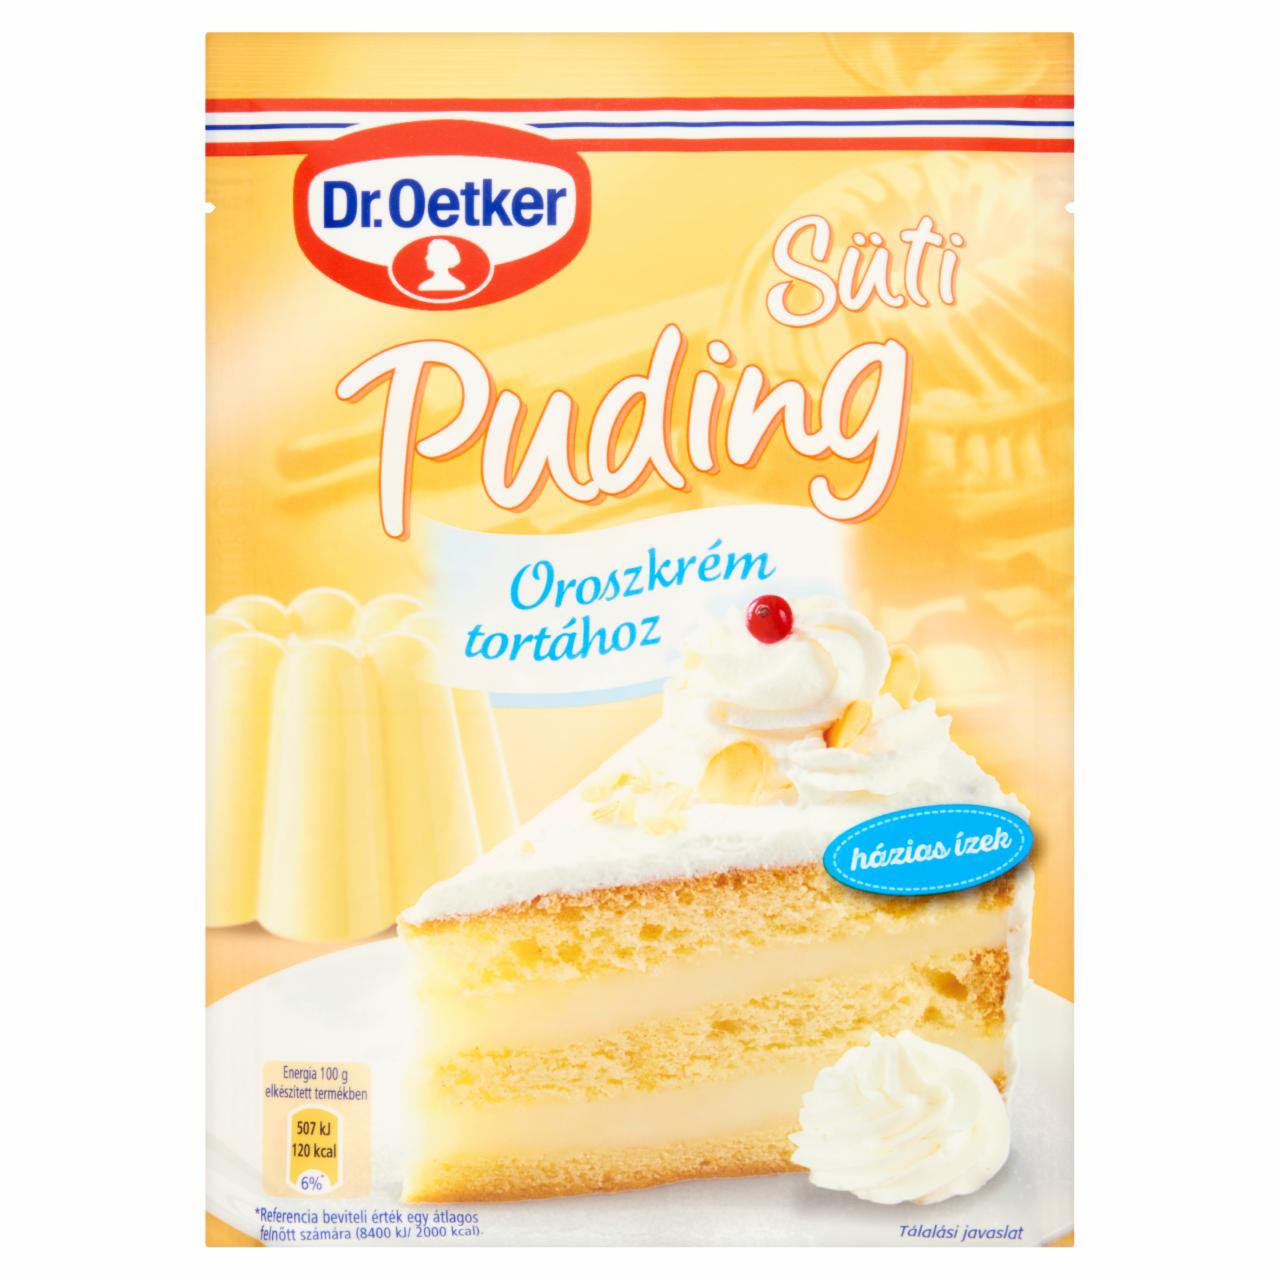 Képek - Dr. Oetker Süti Puding vanília- és rumízű pudingpor oroszkrém tortához 78 g